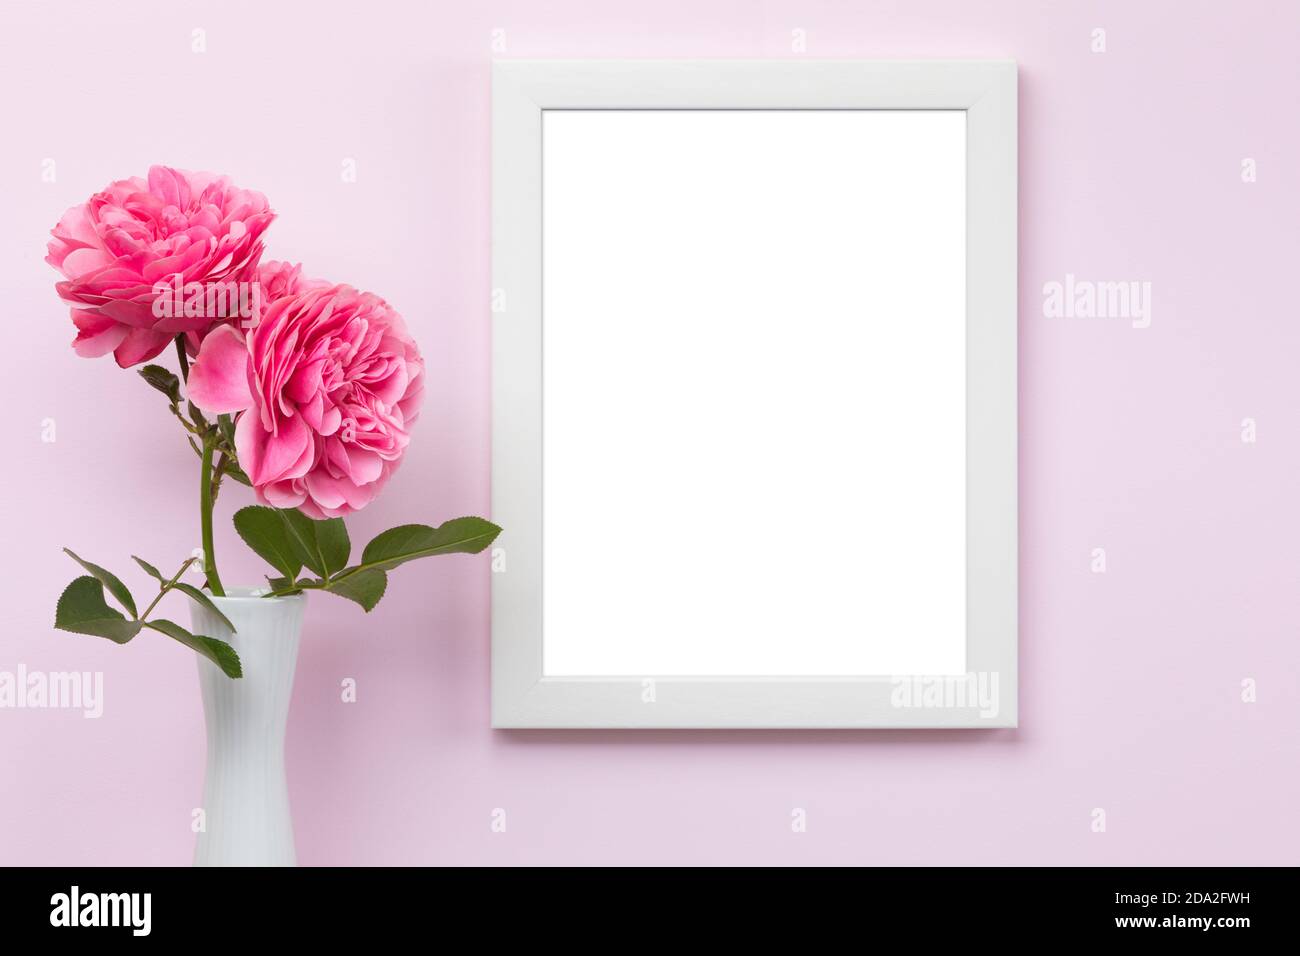 Mascherina verticale bianca del mockup della cornice dell'immagine sulla parete rosa con vaso e rose davanti, area vuota dell'immagine isolata con il tracciato di ritaglio Foto Stock